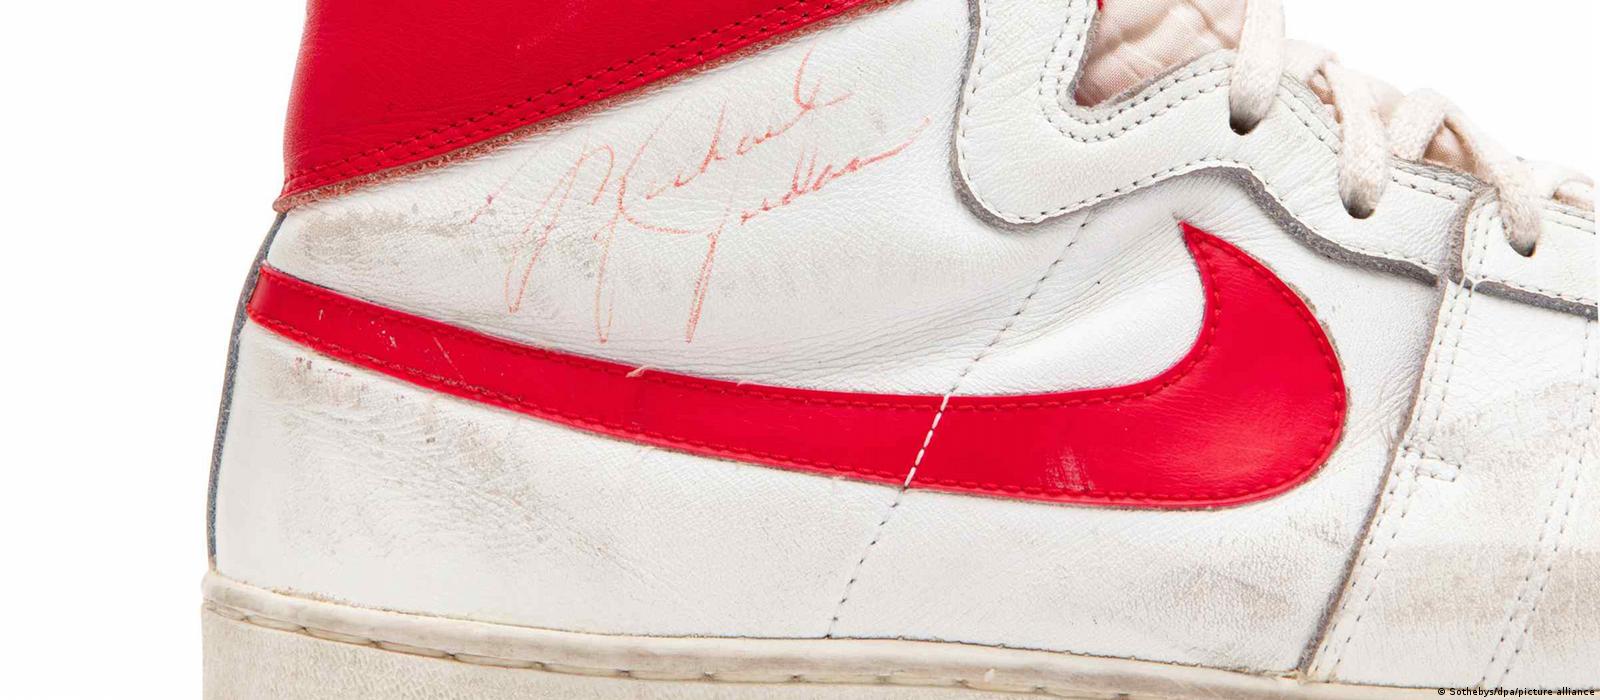 Subastan zapatillas de Michael Jordan USD 1,4 millones – DW – 25/10/2021